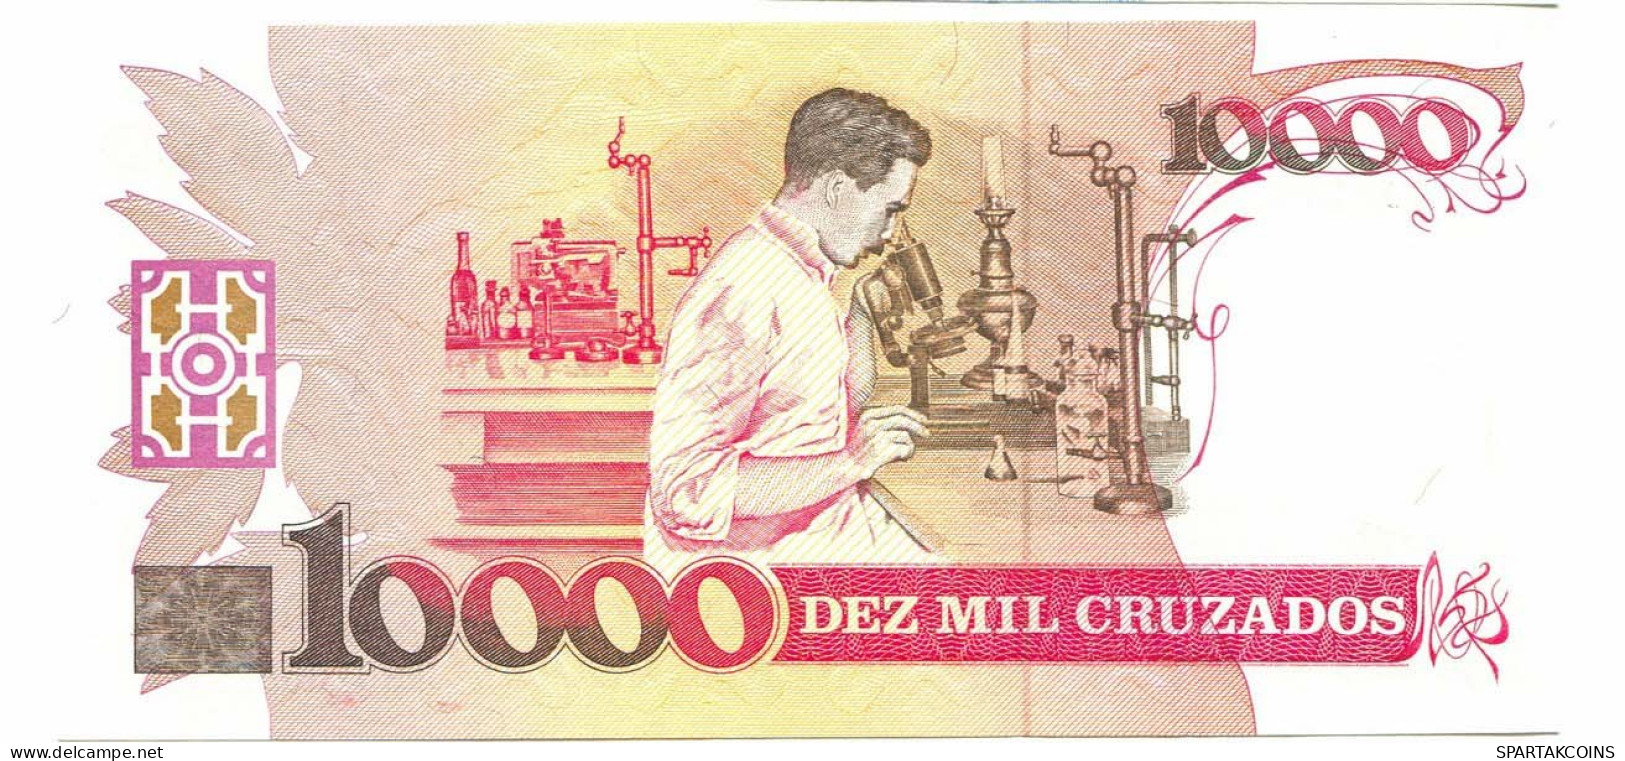 BRASIL 10000 CRUZADOS 1989 UNC Paper Money Banknote #P10884.4 - [11] Emisiones Locales